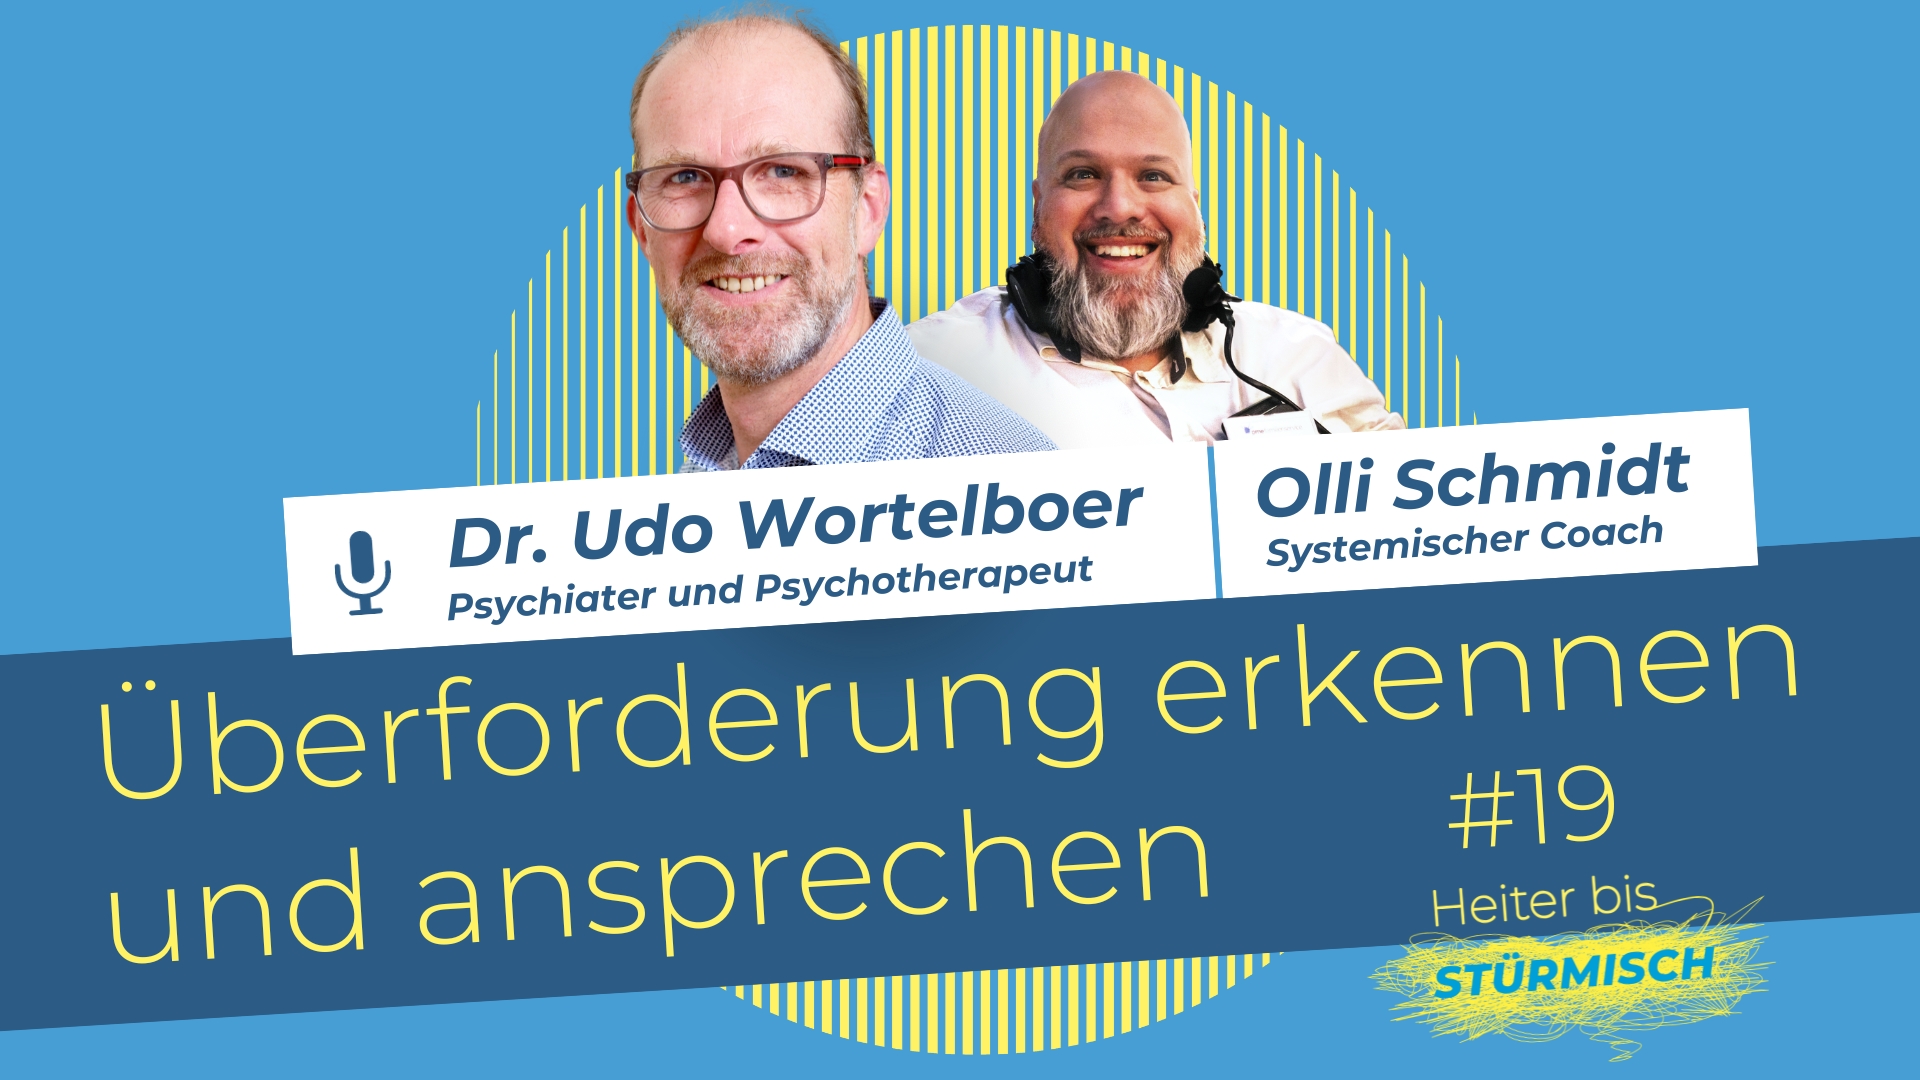 zu sehen sind Podcast-Host Olli Schmidt mit Dr. Udo Wortelboer, Facharzt für Psychiatrie und Psychotherapie